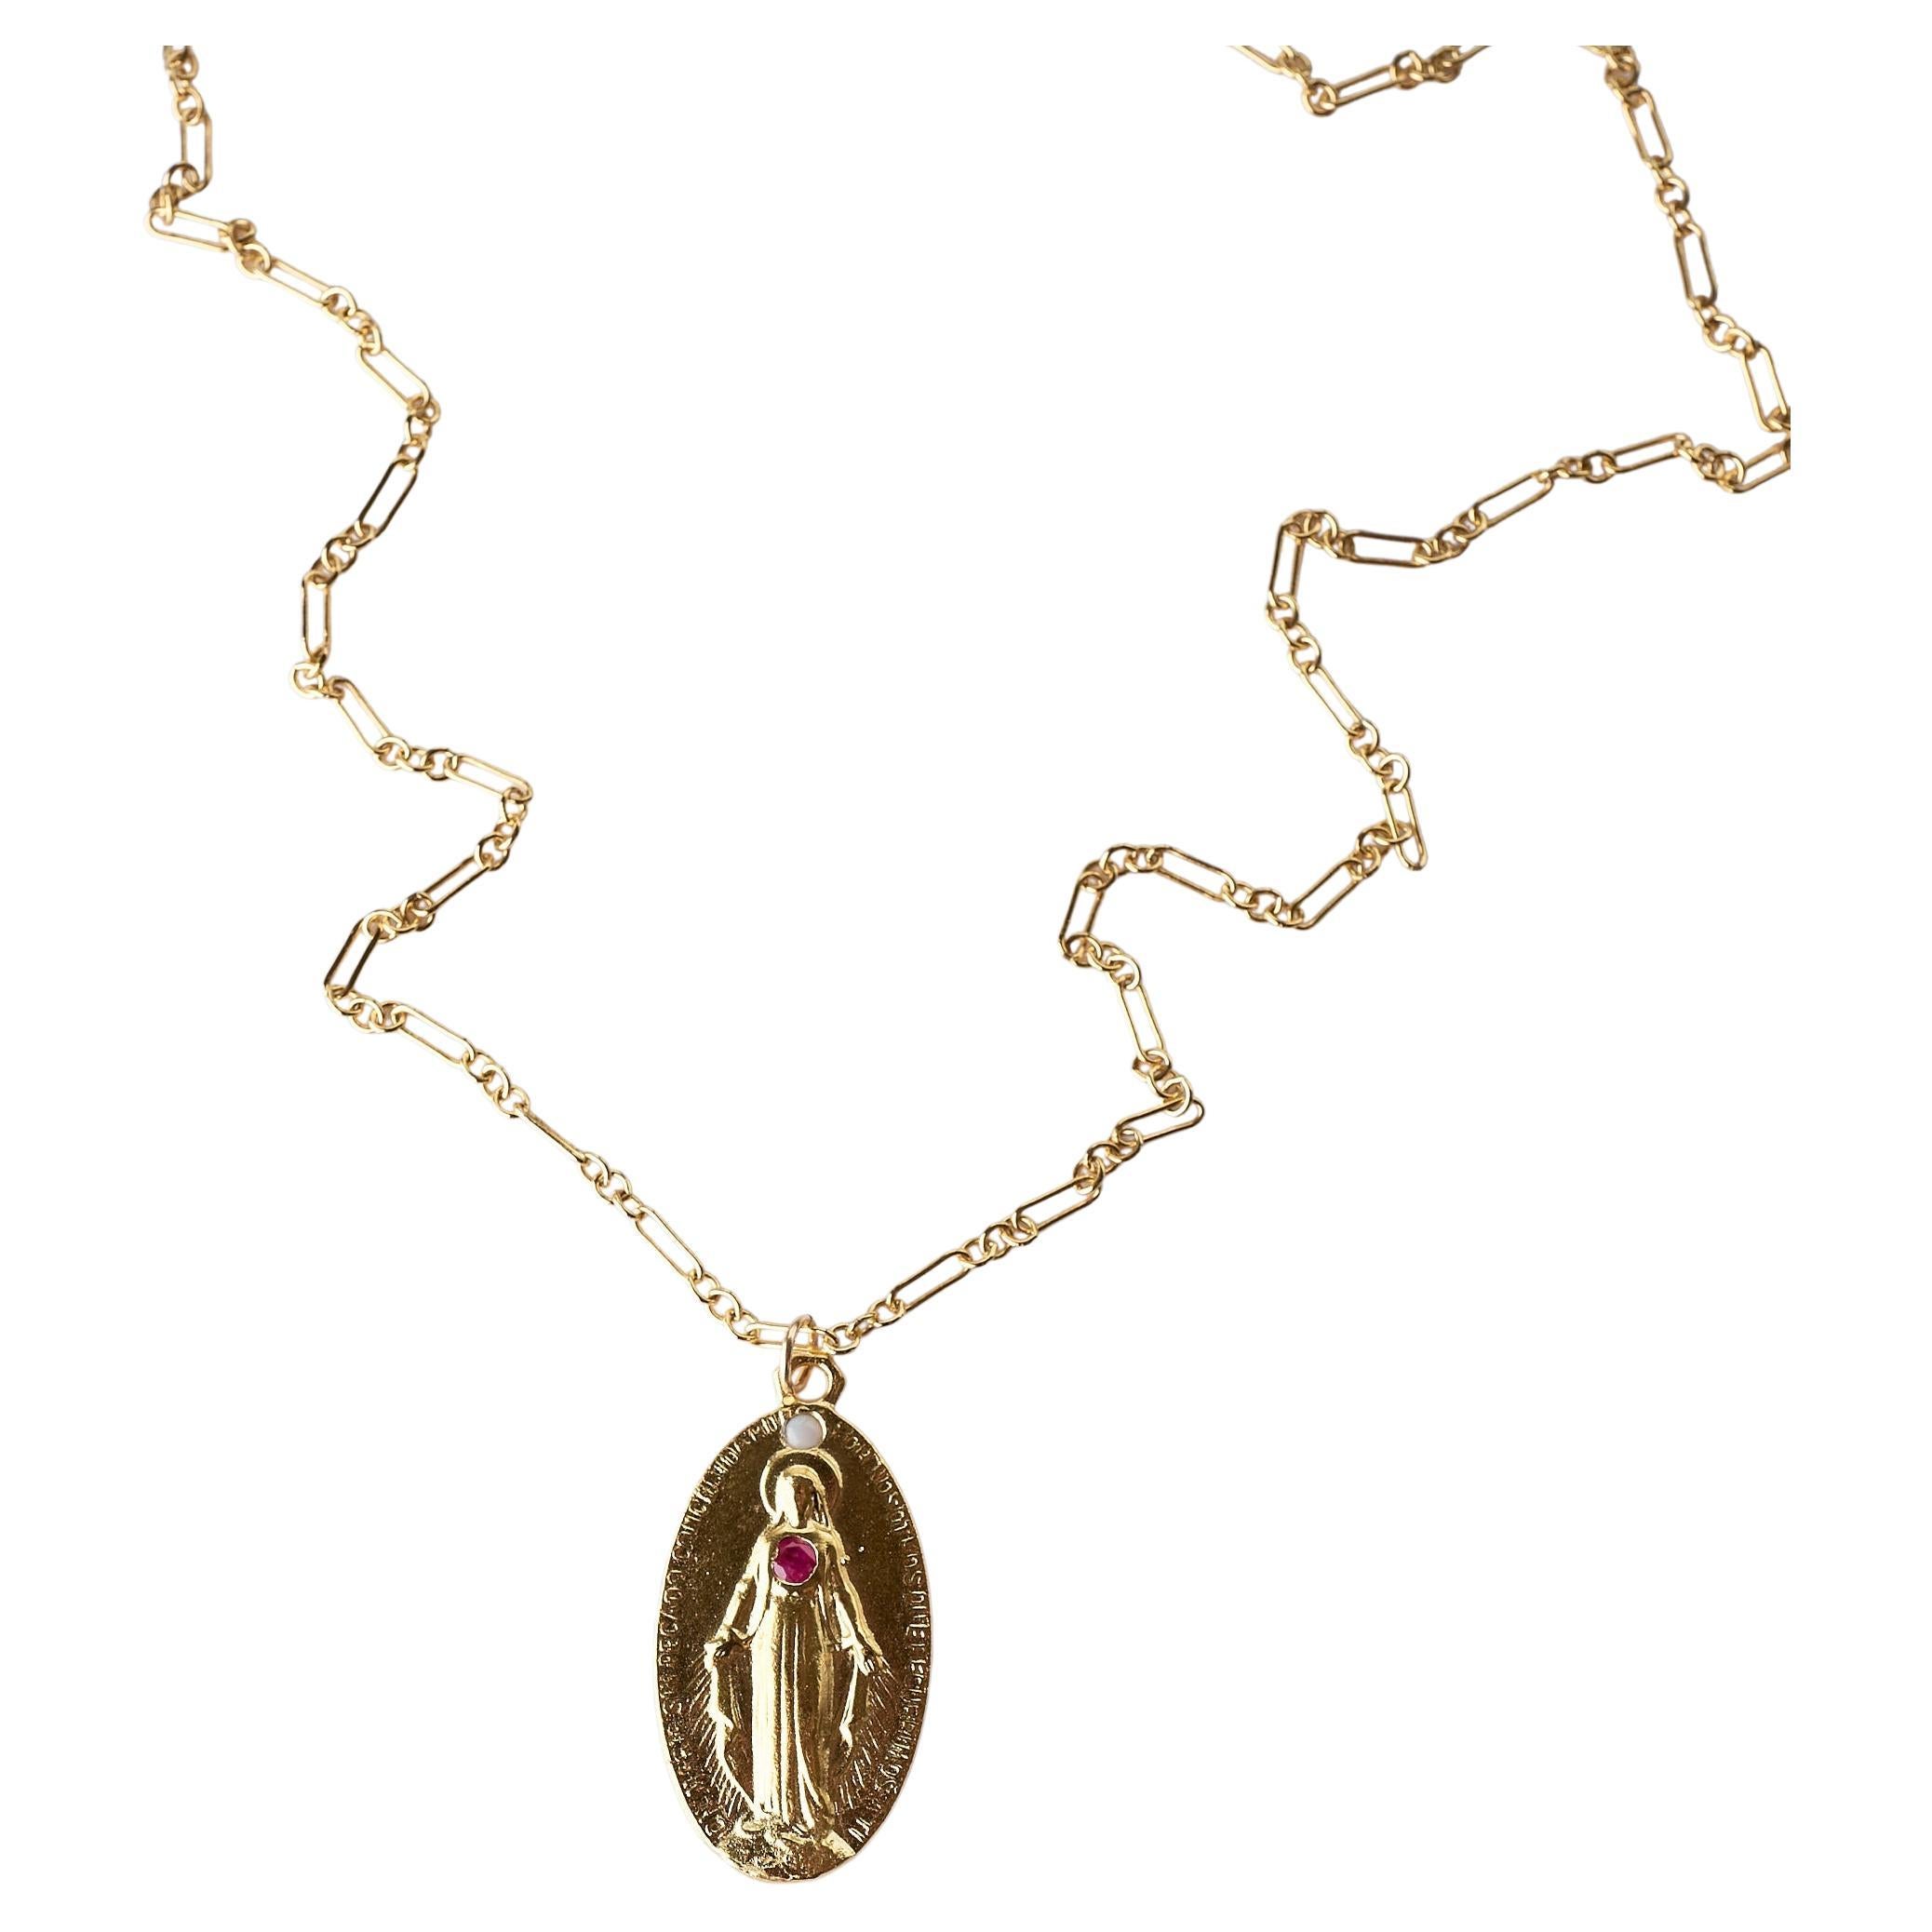 Mary Virgin Mary Medaille Kette Halskette Rubin Opal J Dauphin